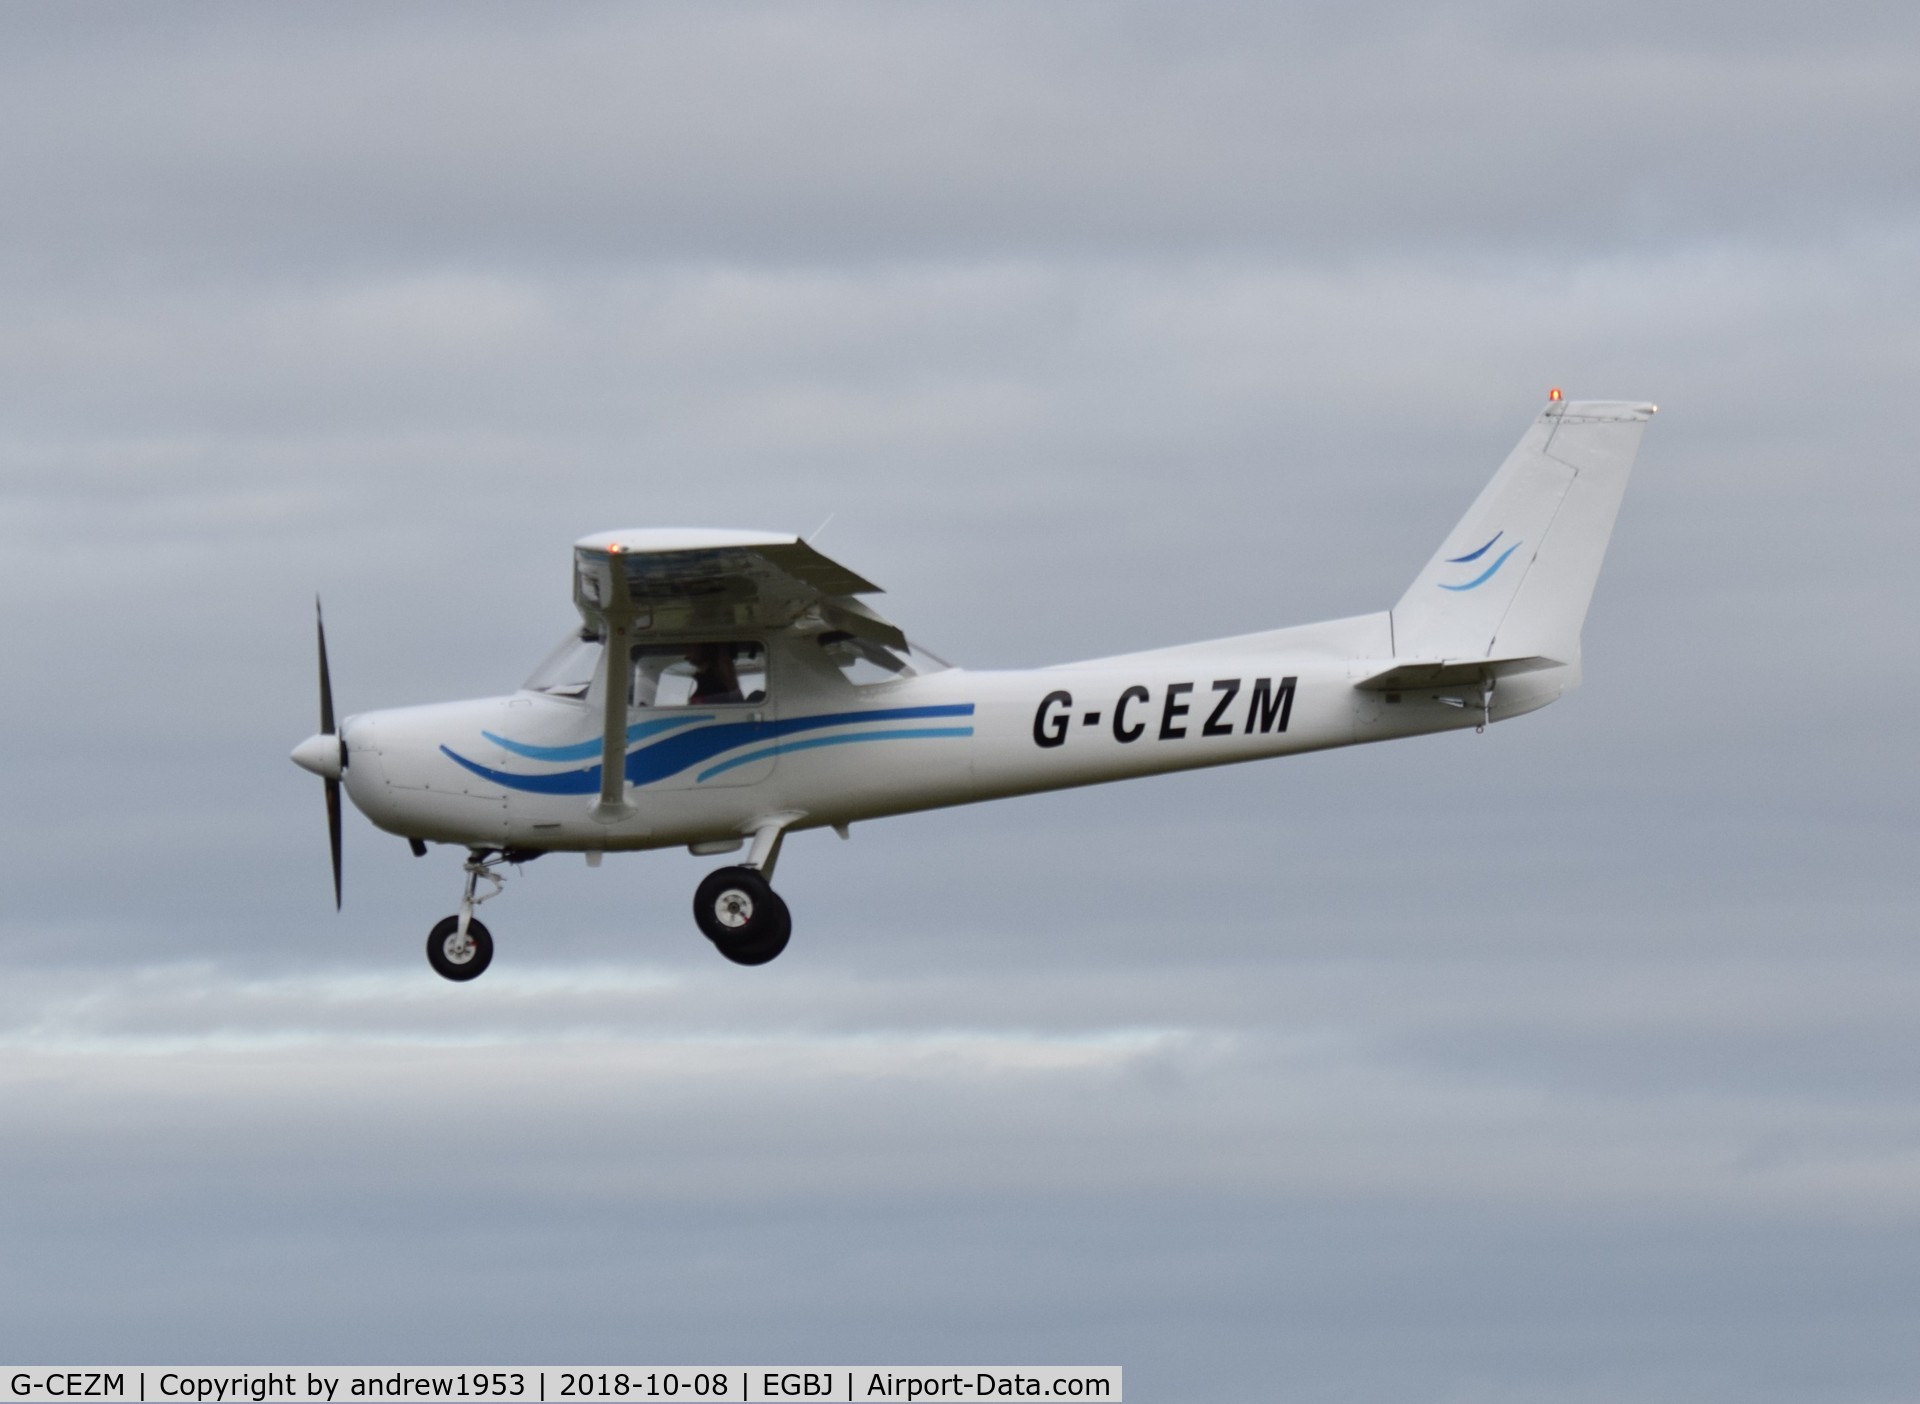 G-CEZM, 1981 Cessna 152 C/N 15285179, G-CEZM at Gloucestershire Airport.